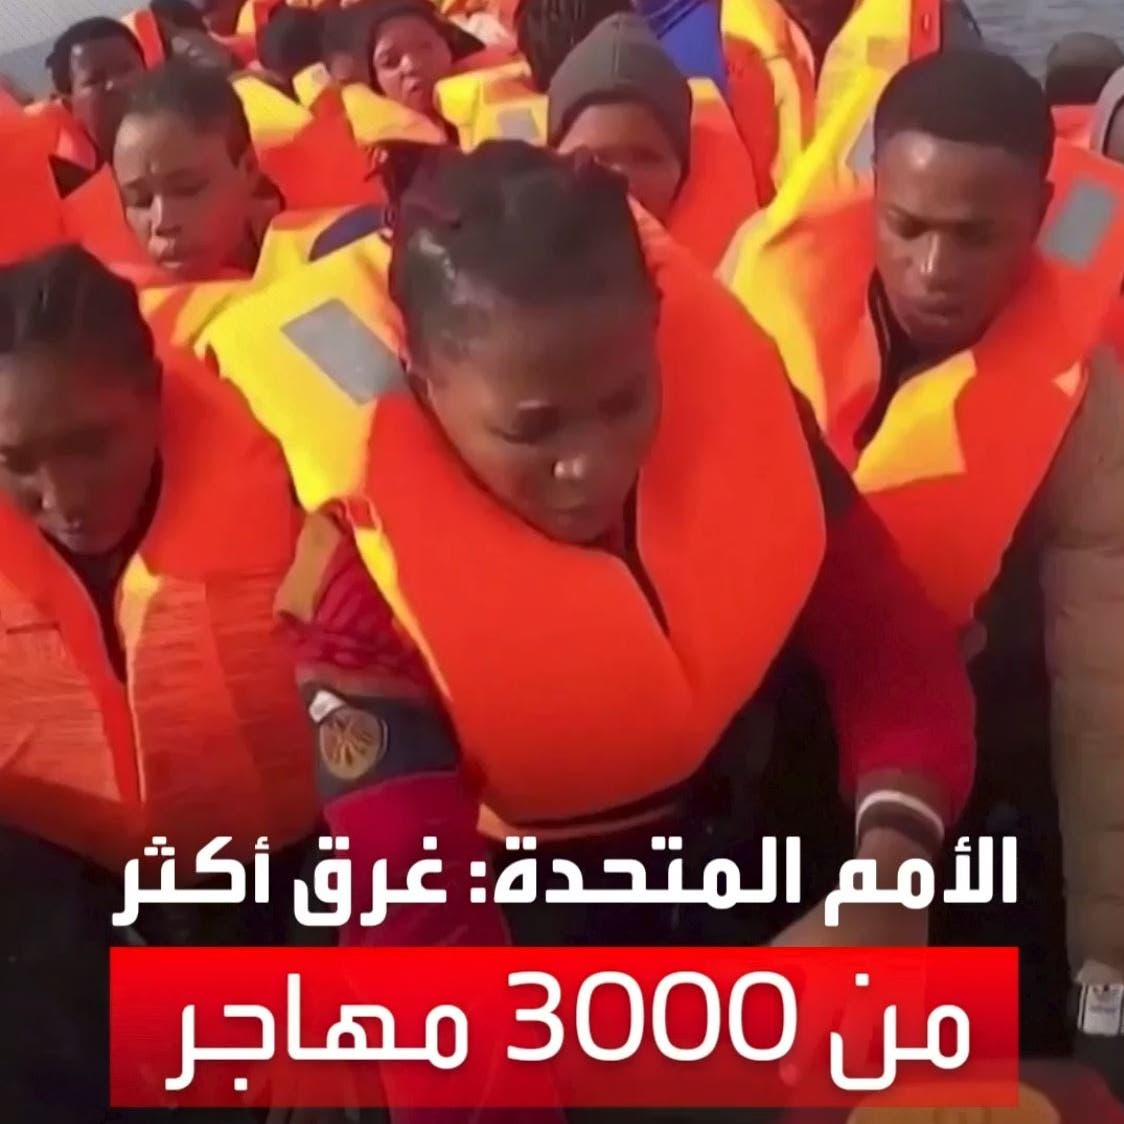 البحر المتوسط يبتلع 3 آلاف مهاجر غير شرعي في عام واحد